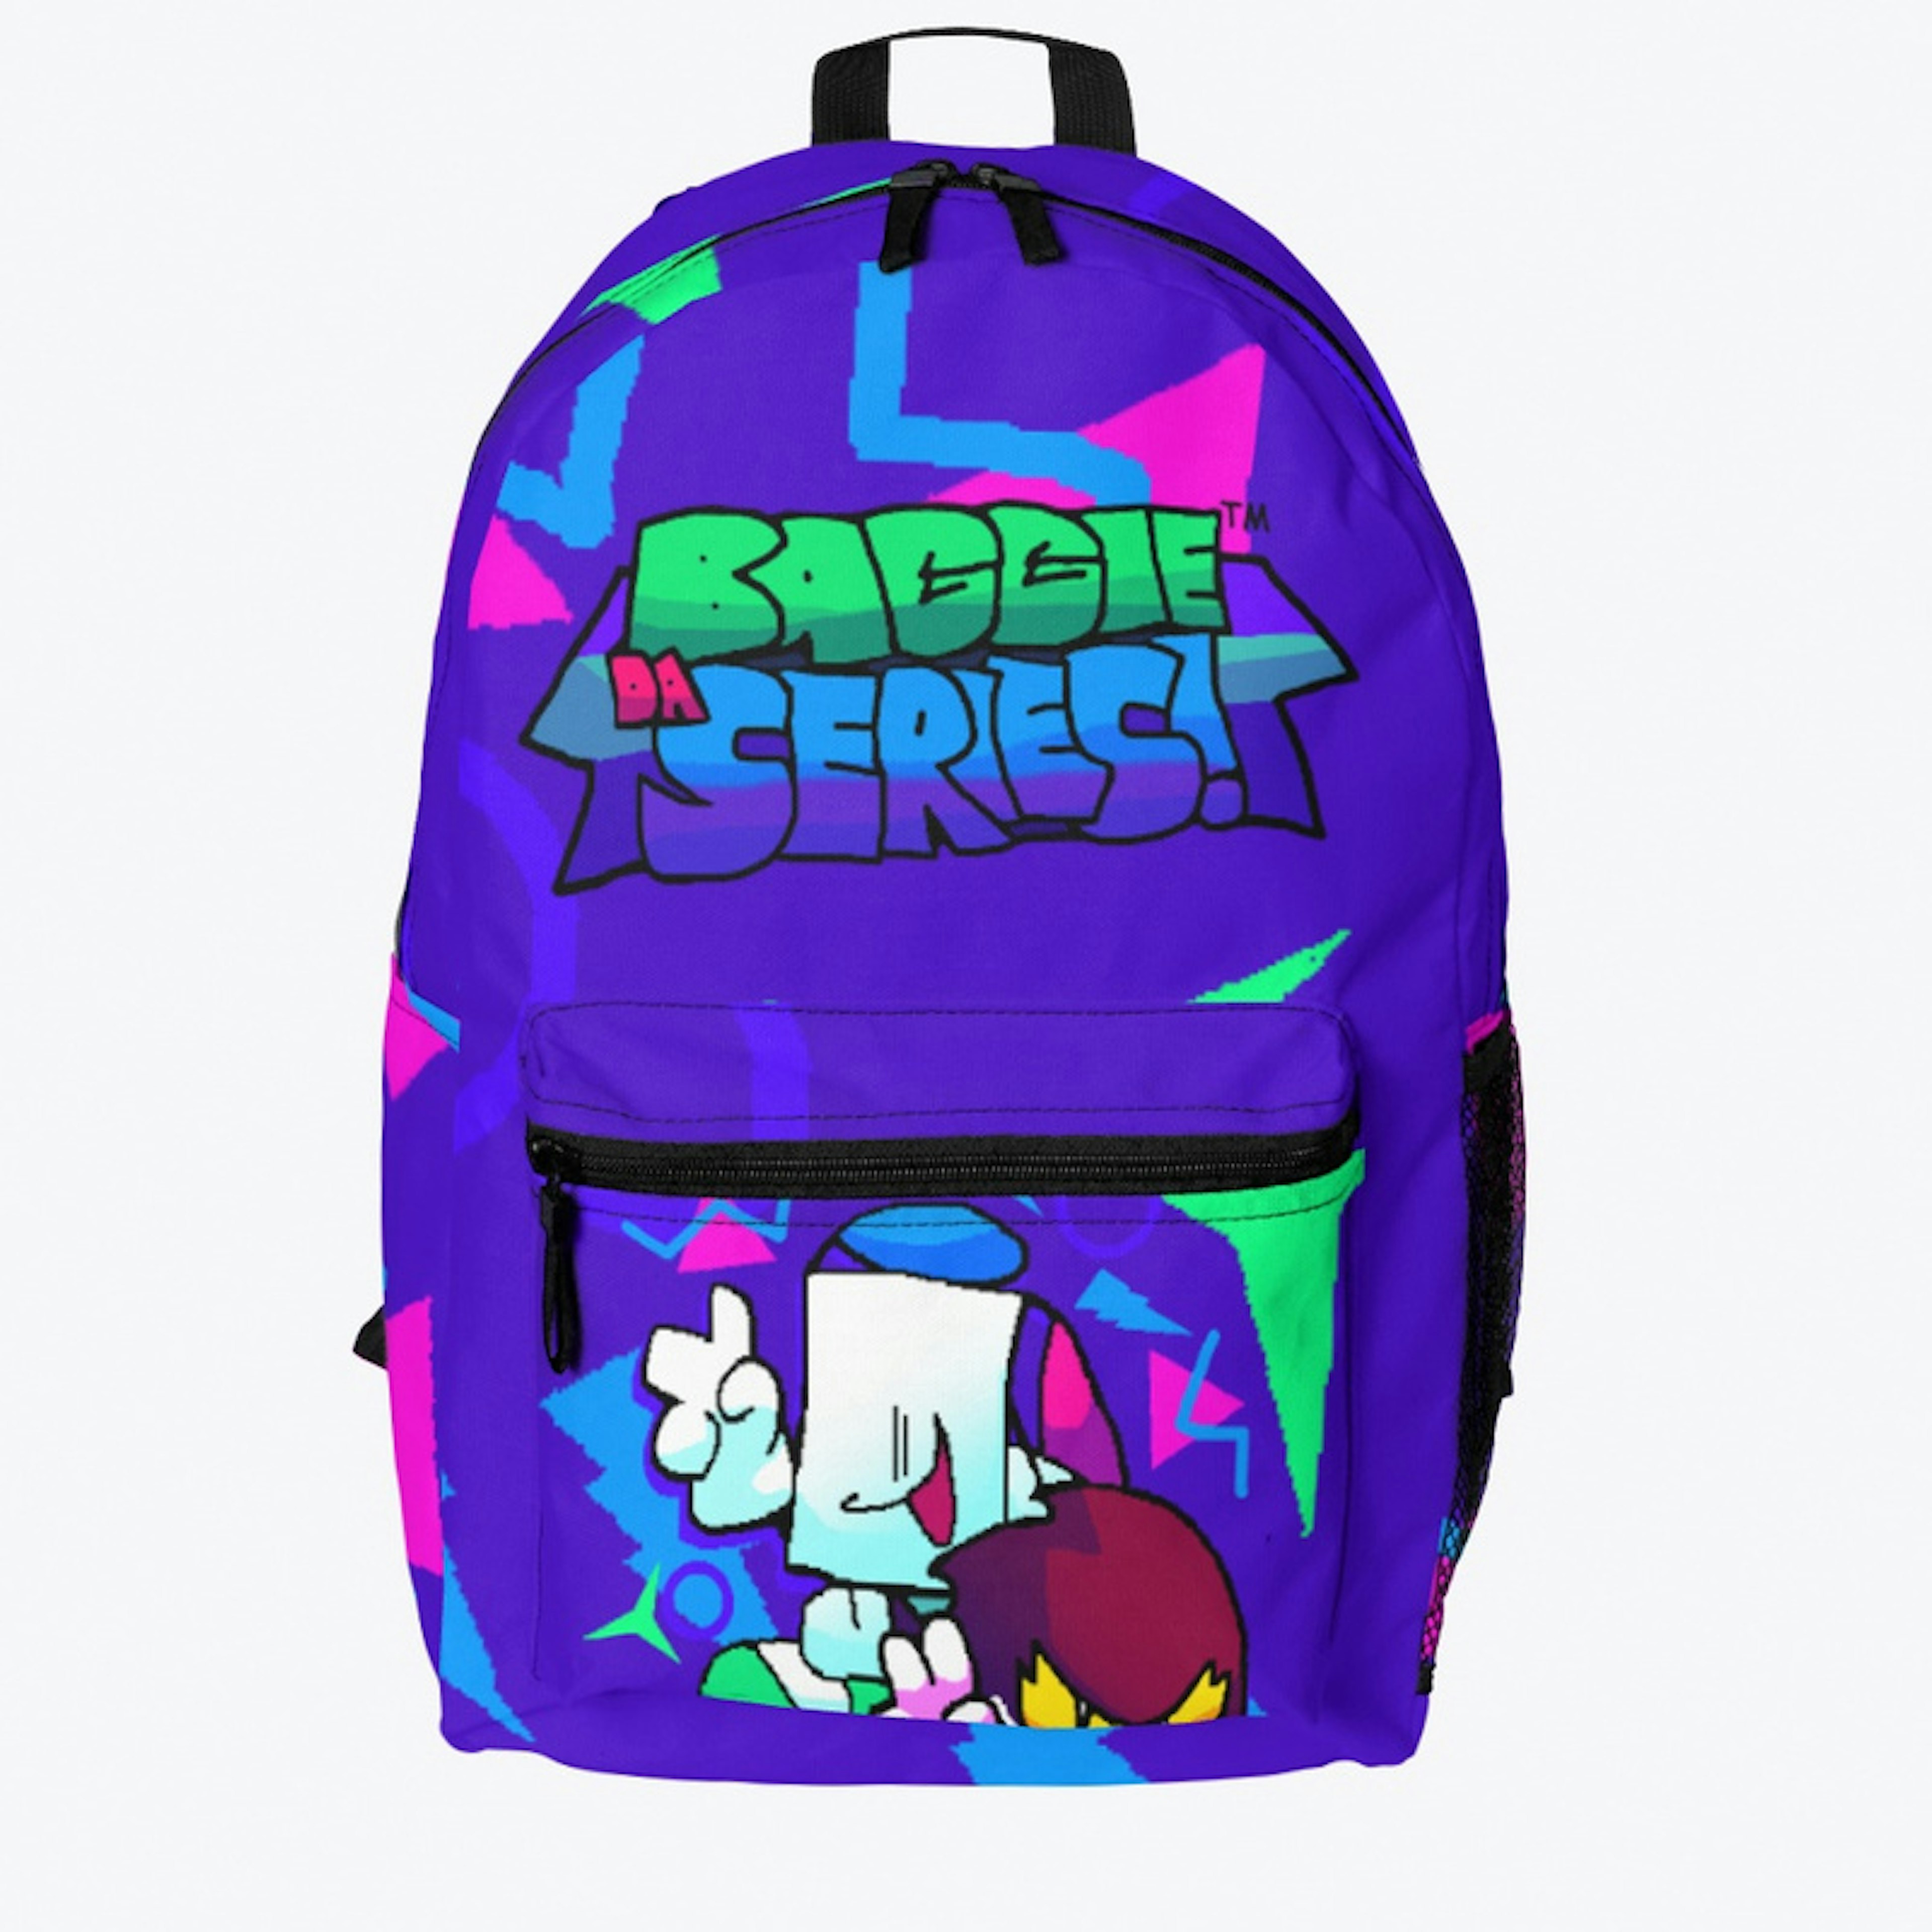 Baggie's Backpack!